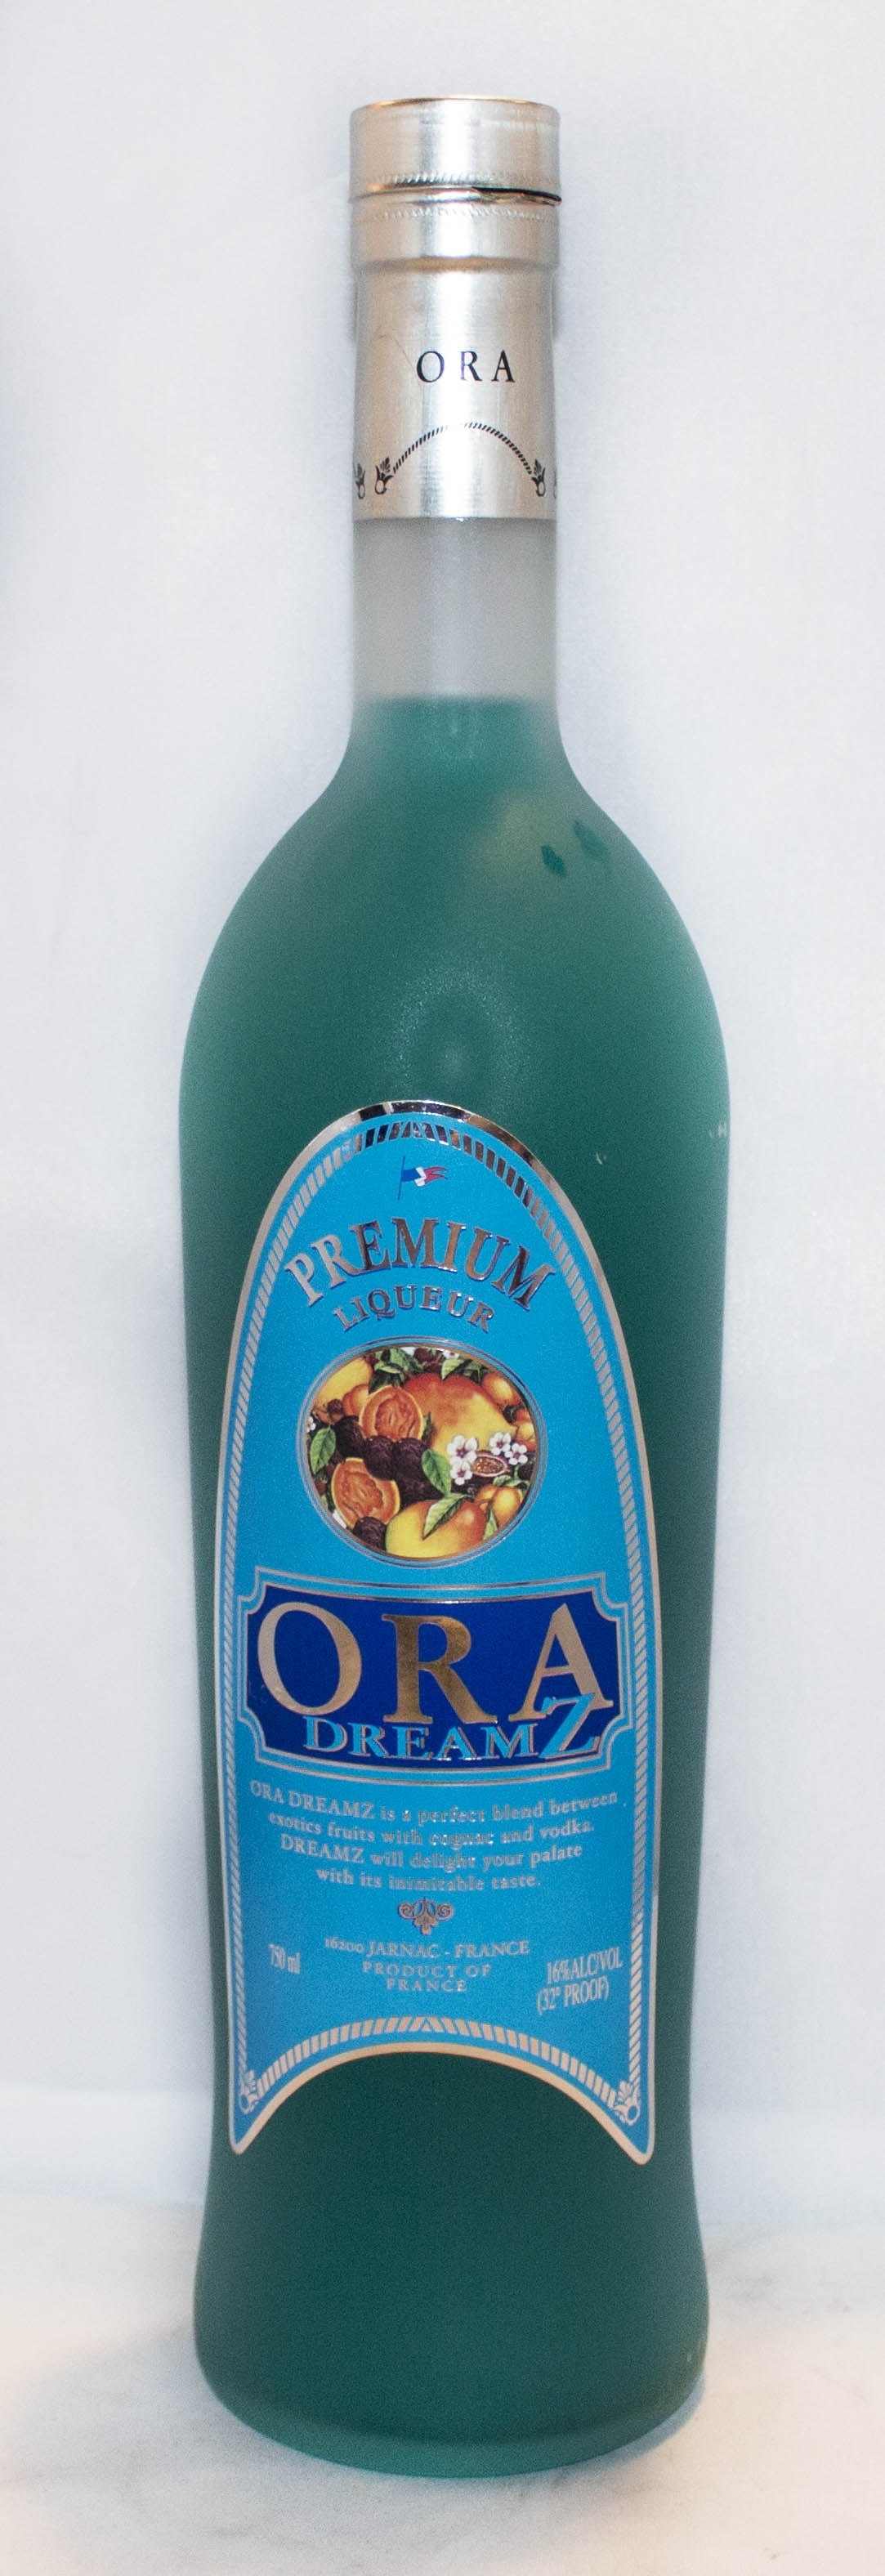 ORA DREAMZ LIQUEUR 750ML - Remedy Liquor